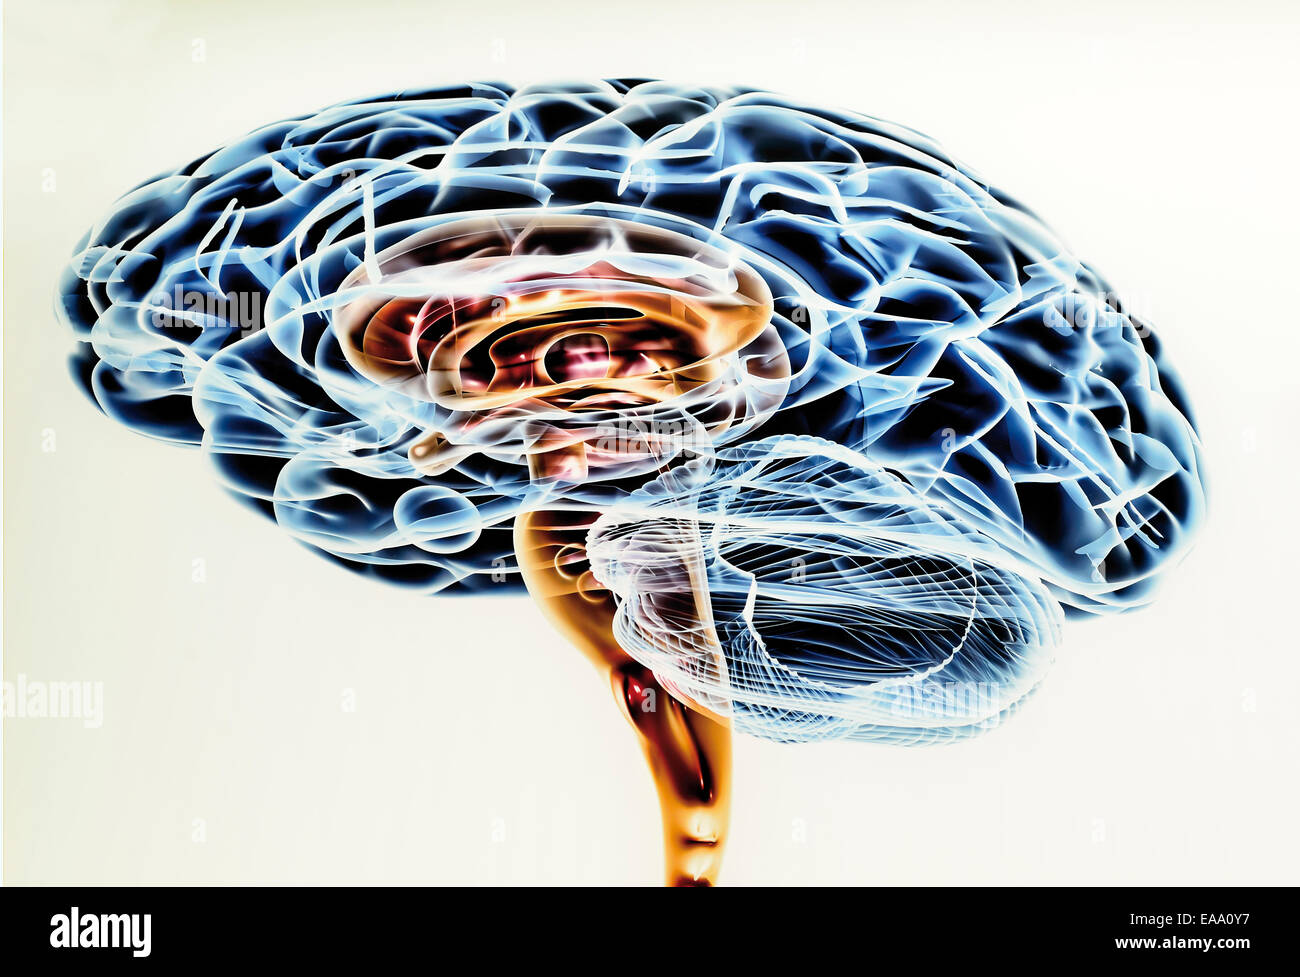 Spagna, Burgos: disegno scientifica del cervello umano nel museo della evoluzione umana Foto Stock